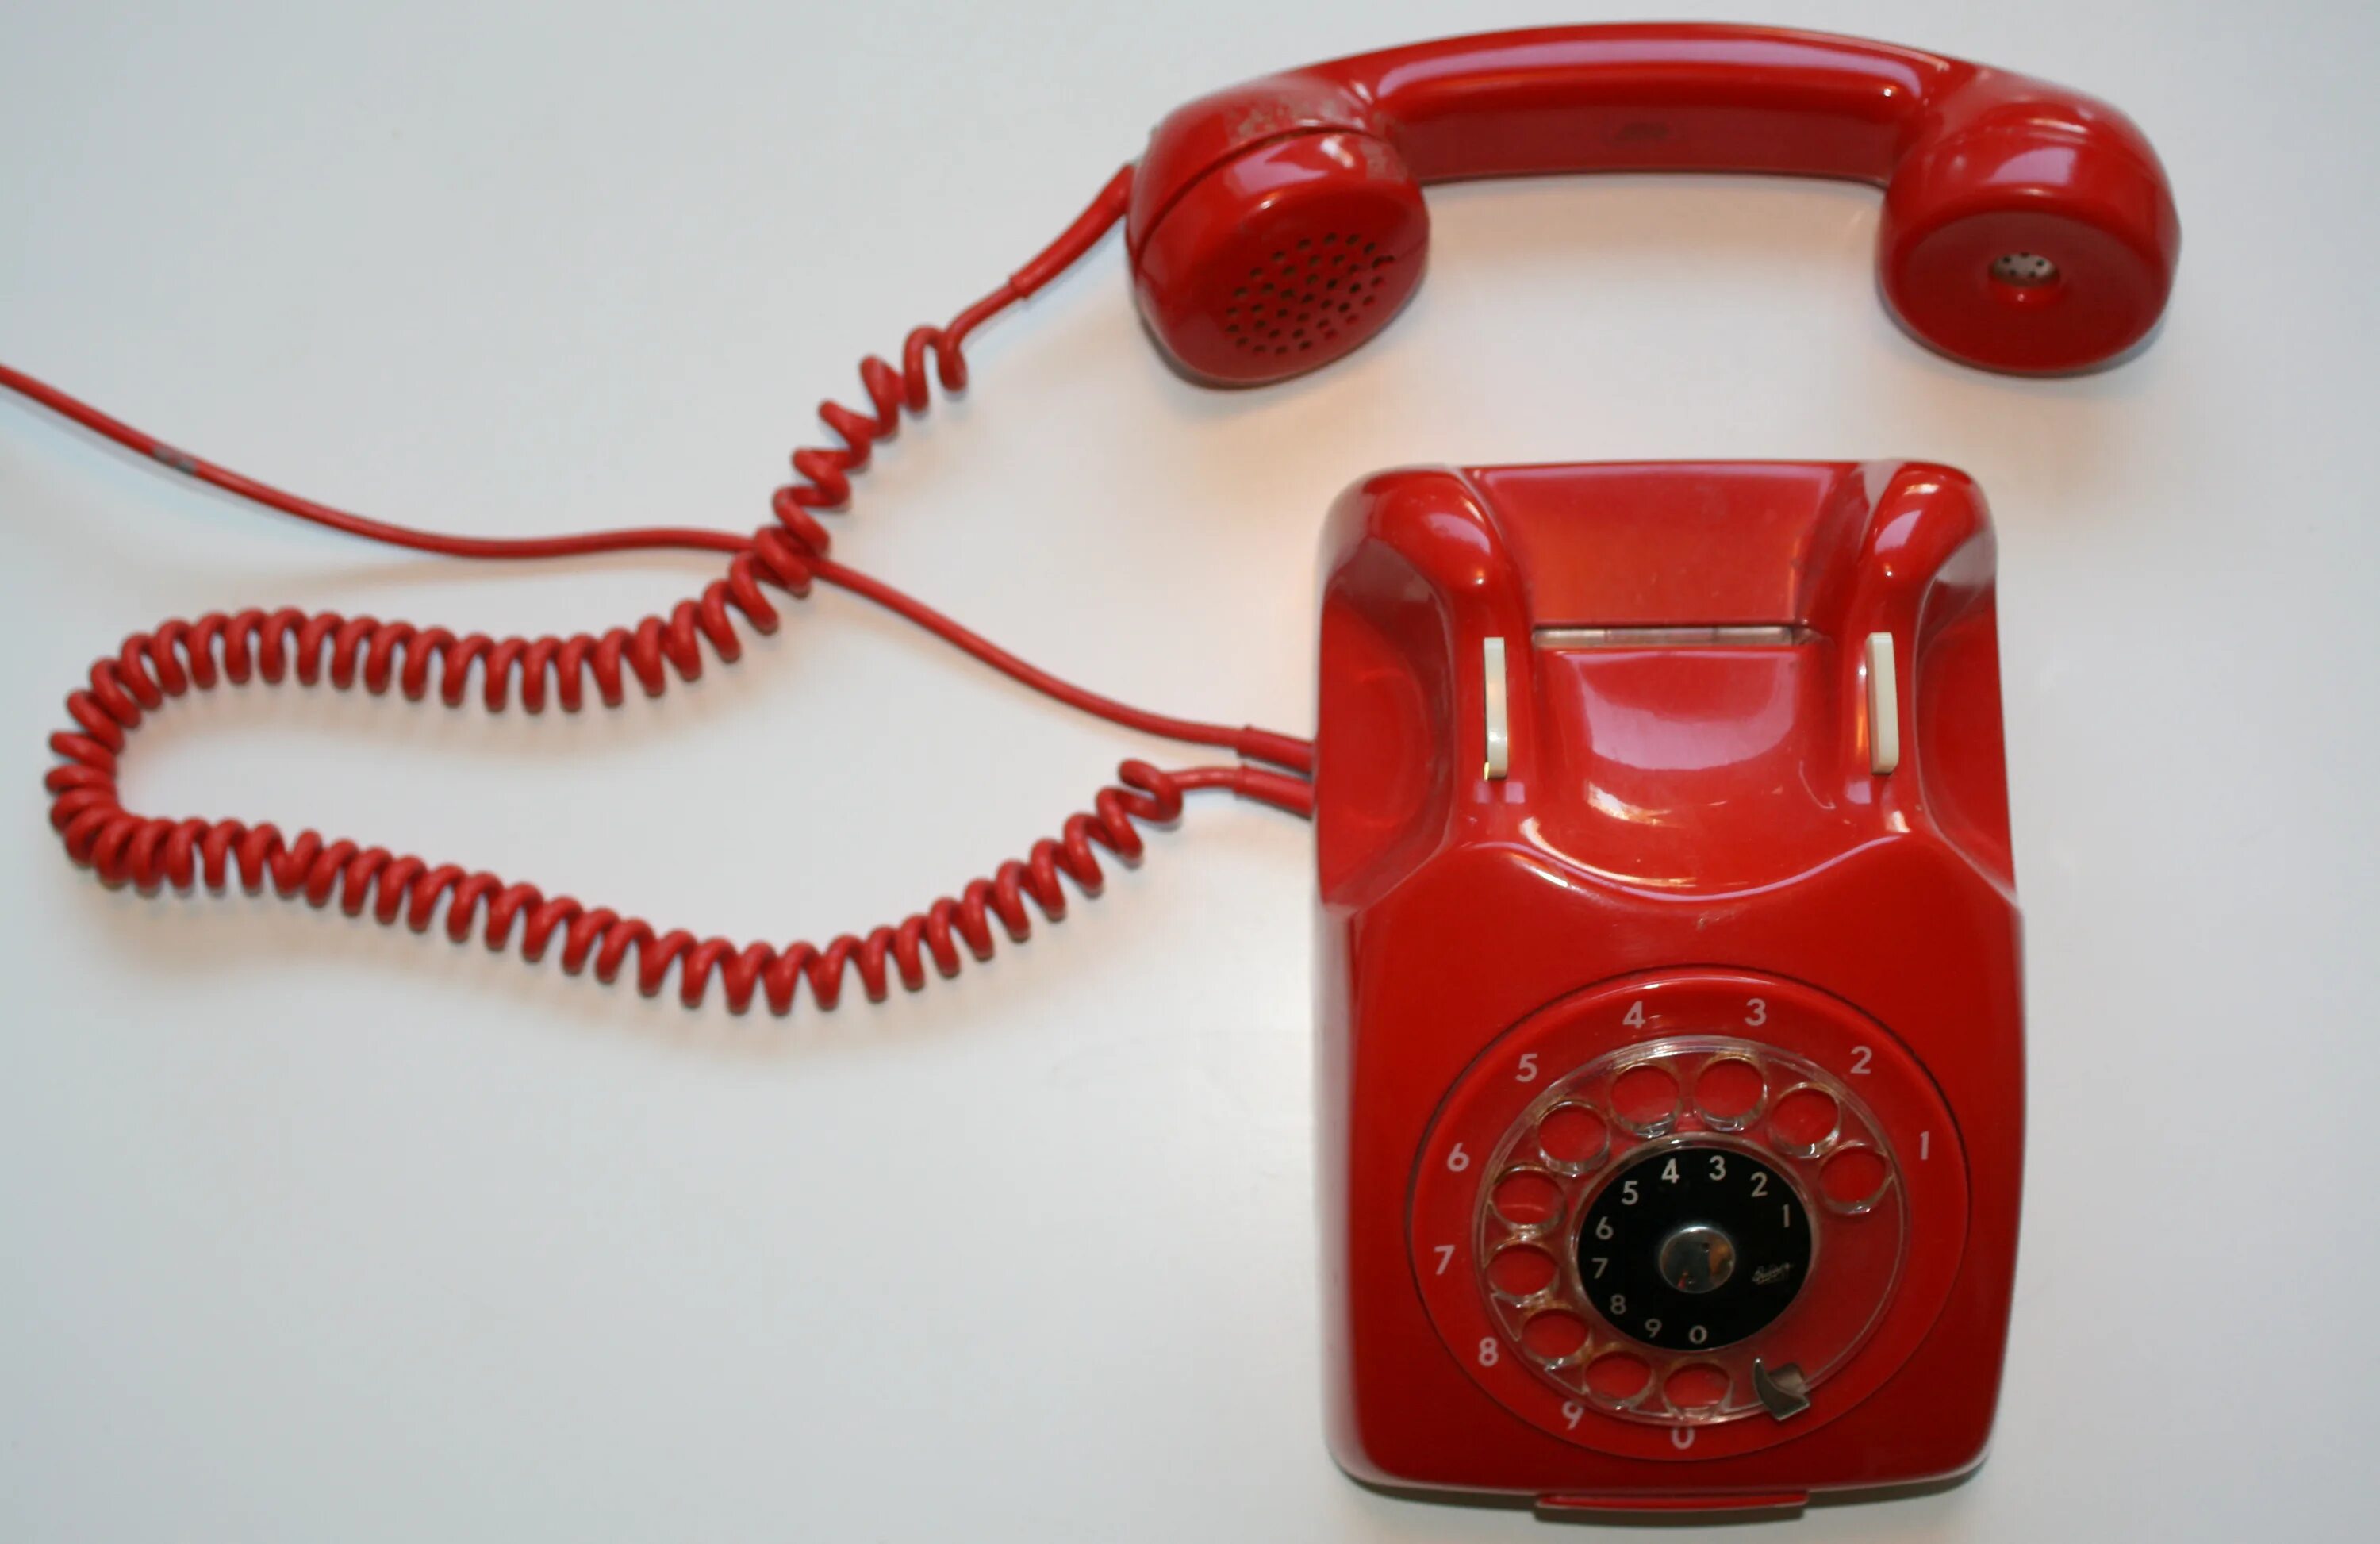 Красный телефон. Красный телефон современный. Телефон Alcatel красный старый. Красная телефонная трубка ретро. Красный телефон что значит